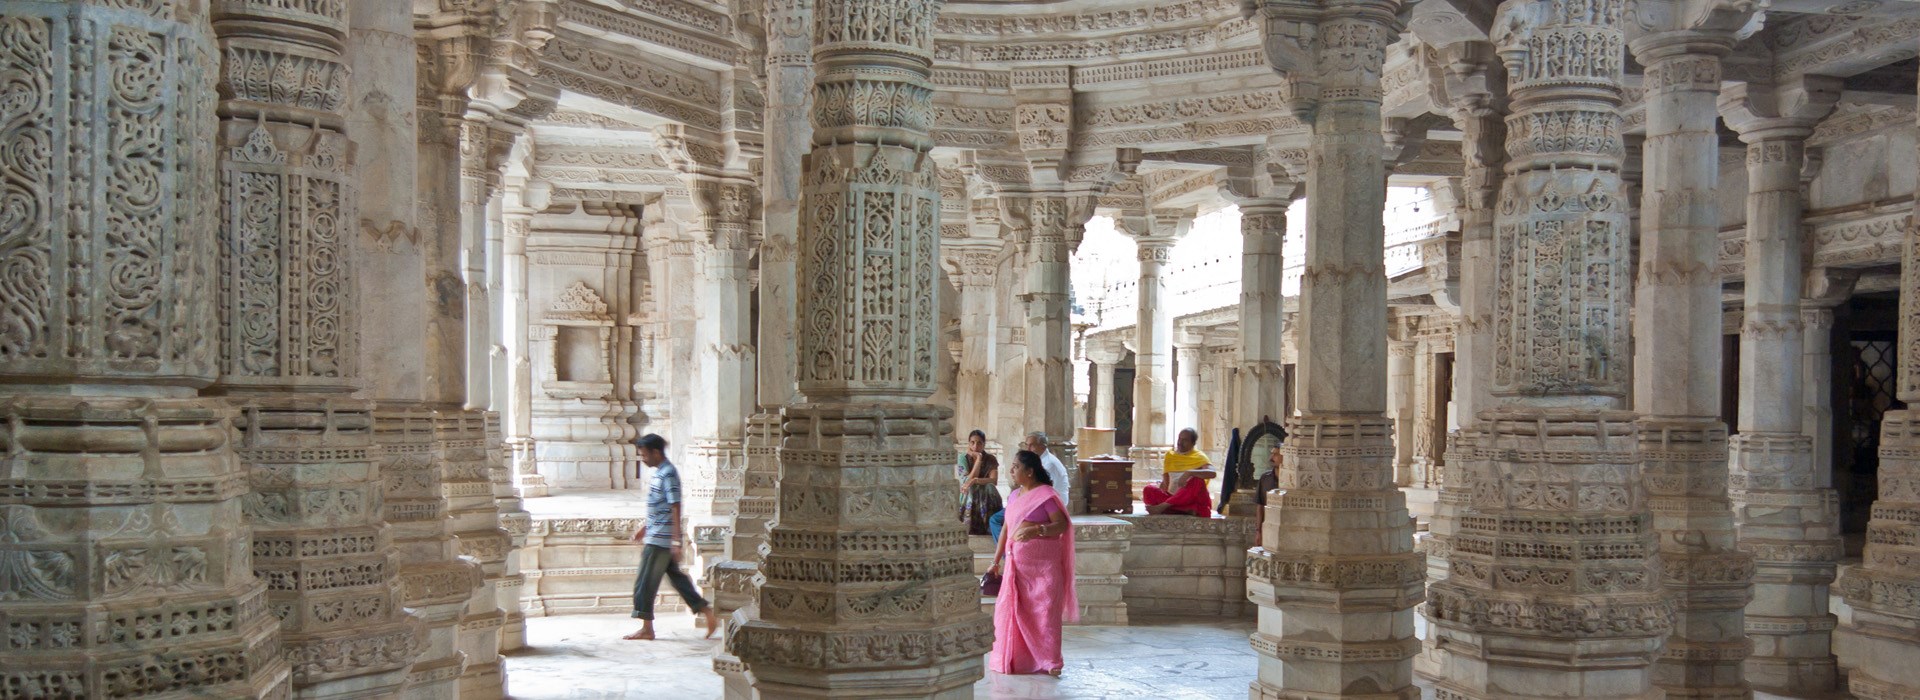 Visiter Ranakpur - Inde